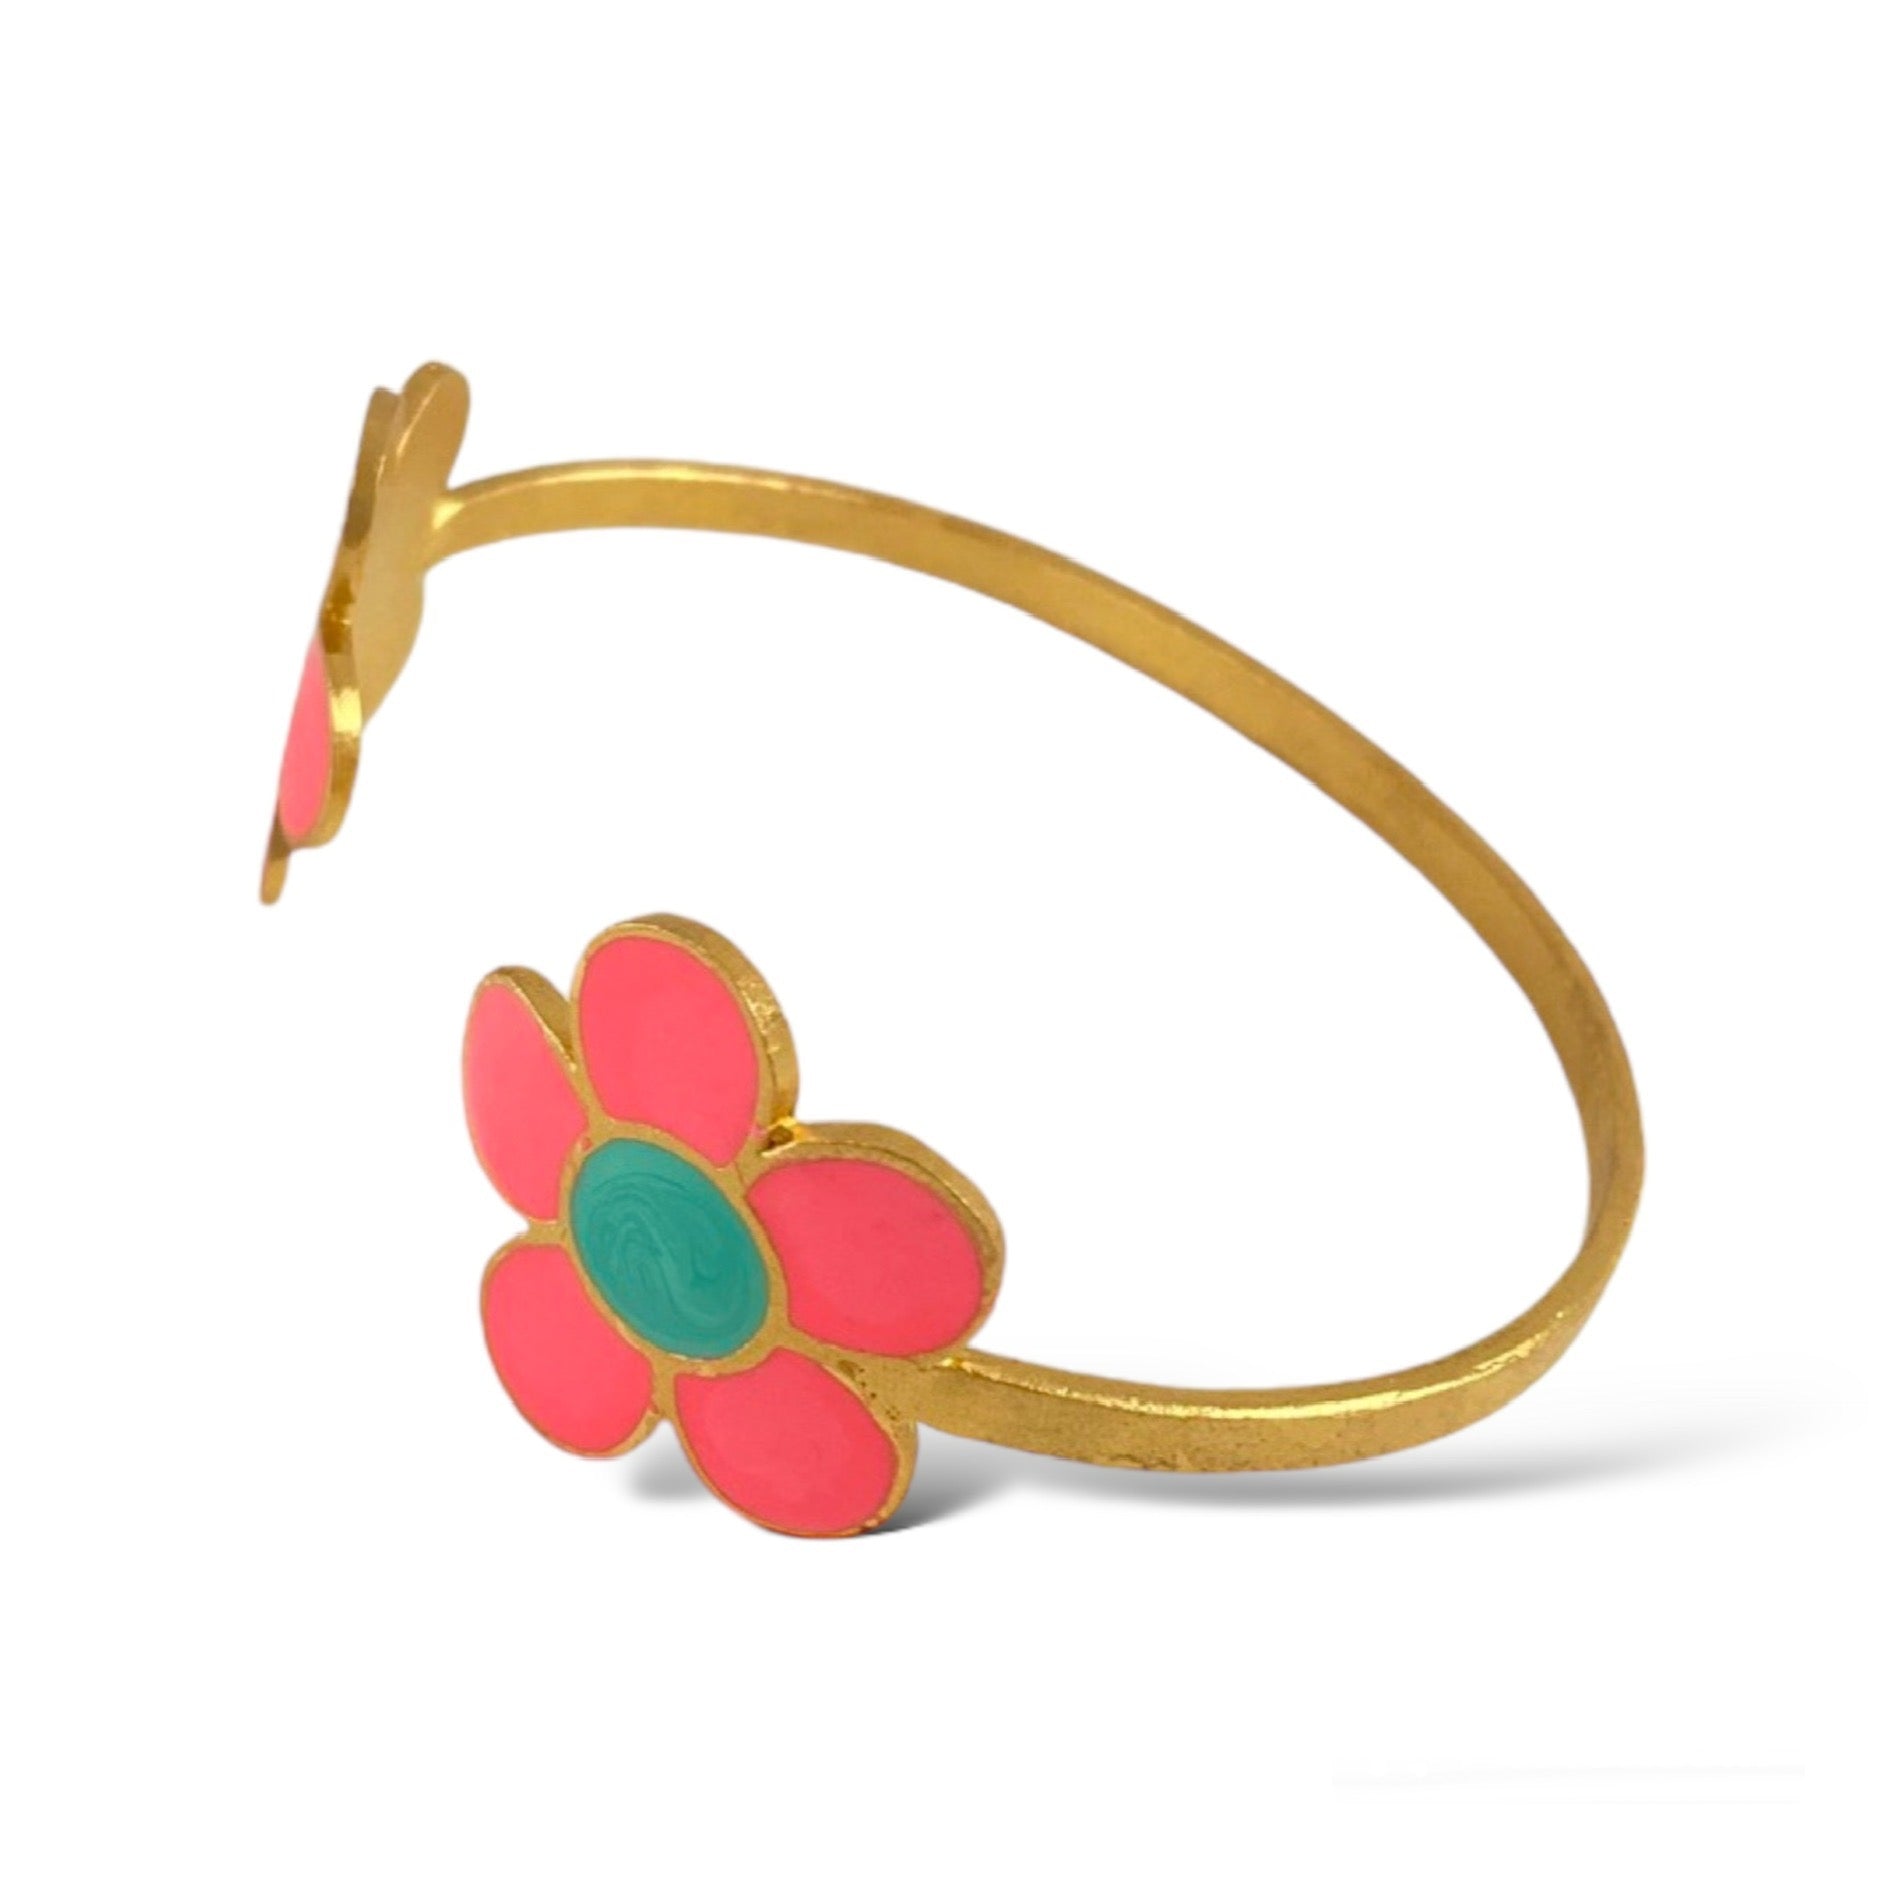 Girl's Enamel Flower Bracelet